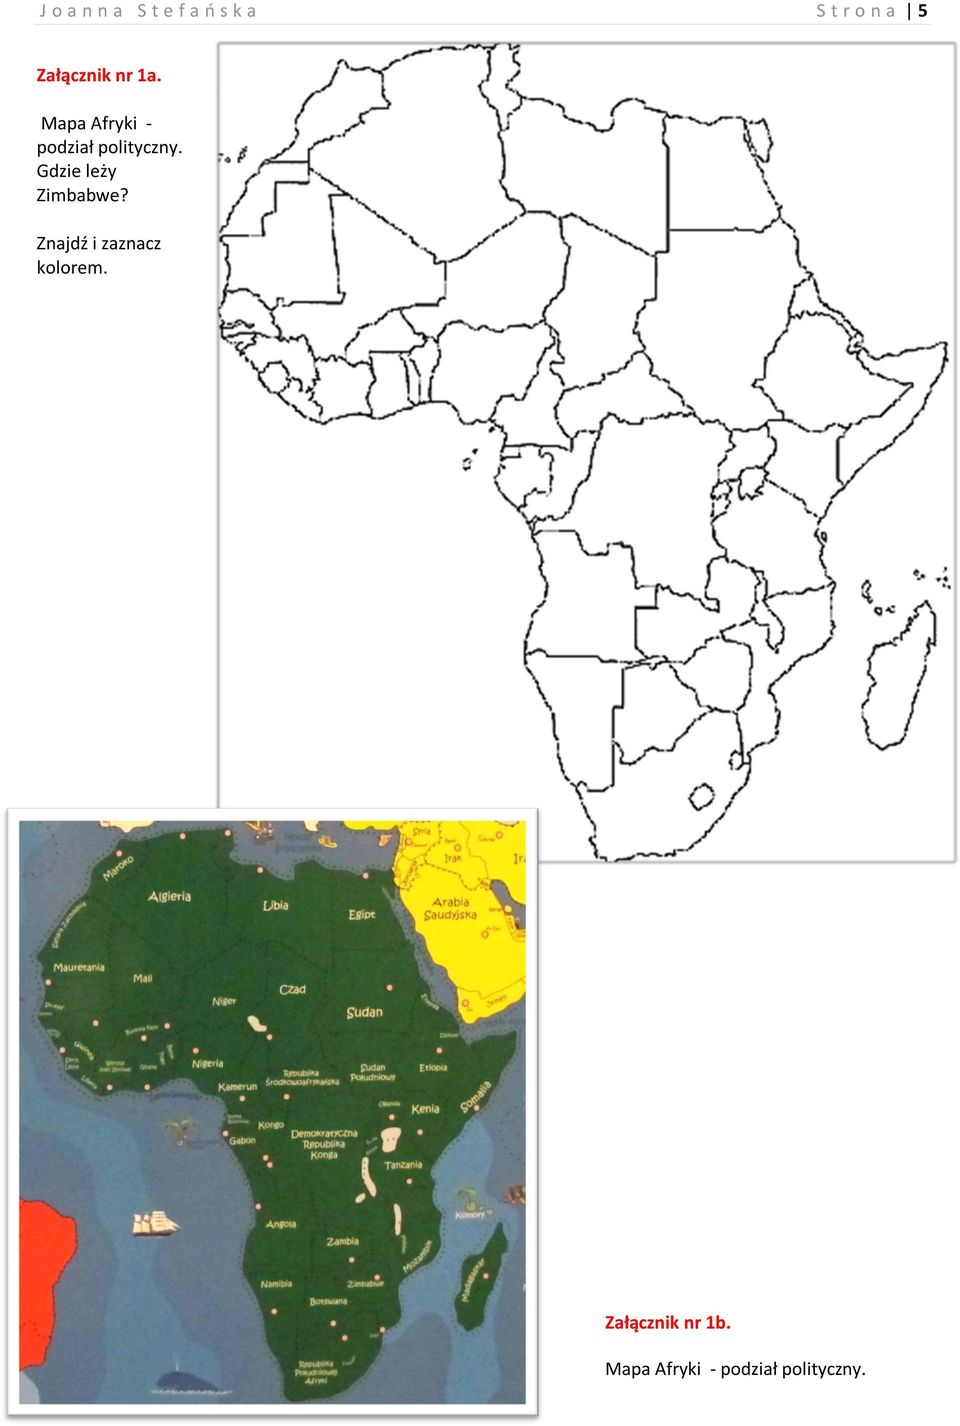 Mapa Afryki - podział polityczny.